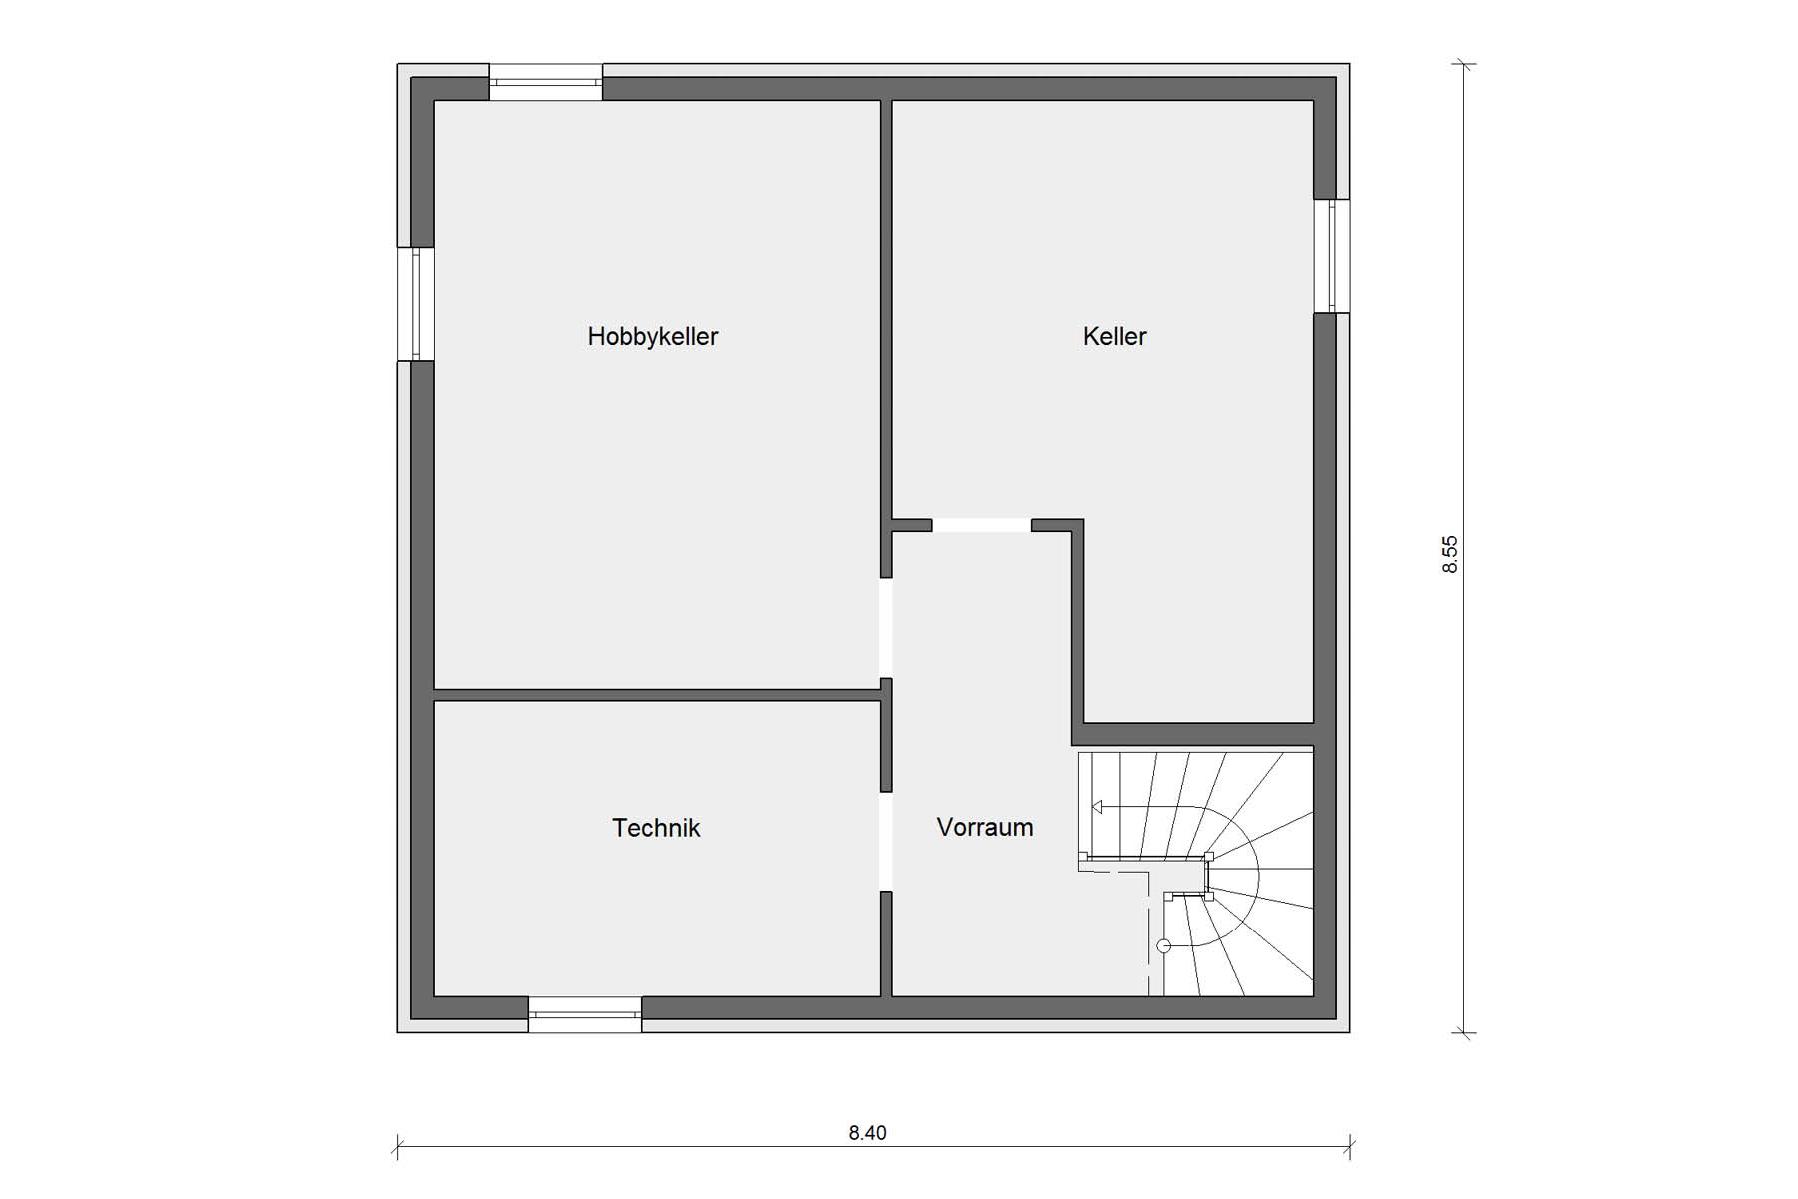 Pianta seminterrato casa unifamiliare moderna con architettura elegante in stile Bauhaus E 20-119.1